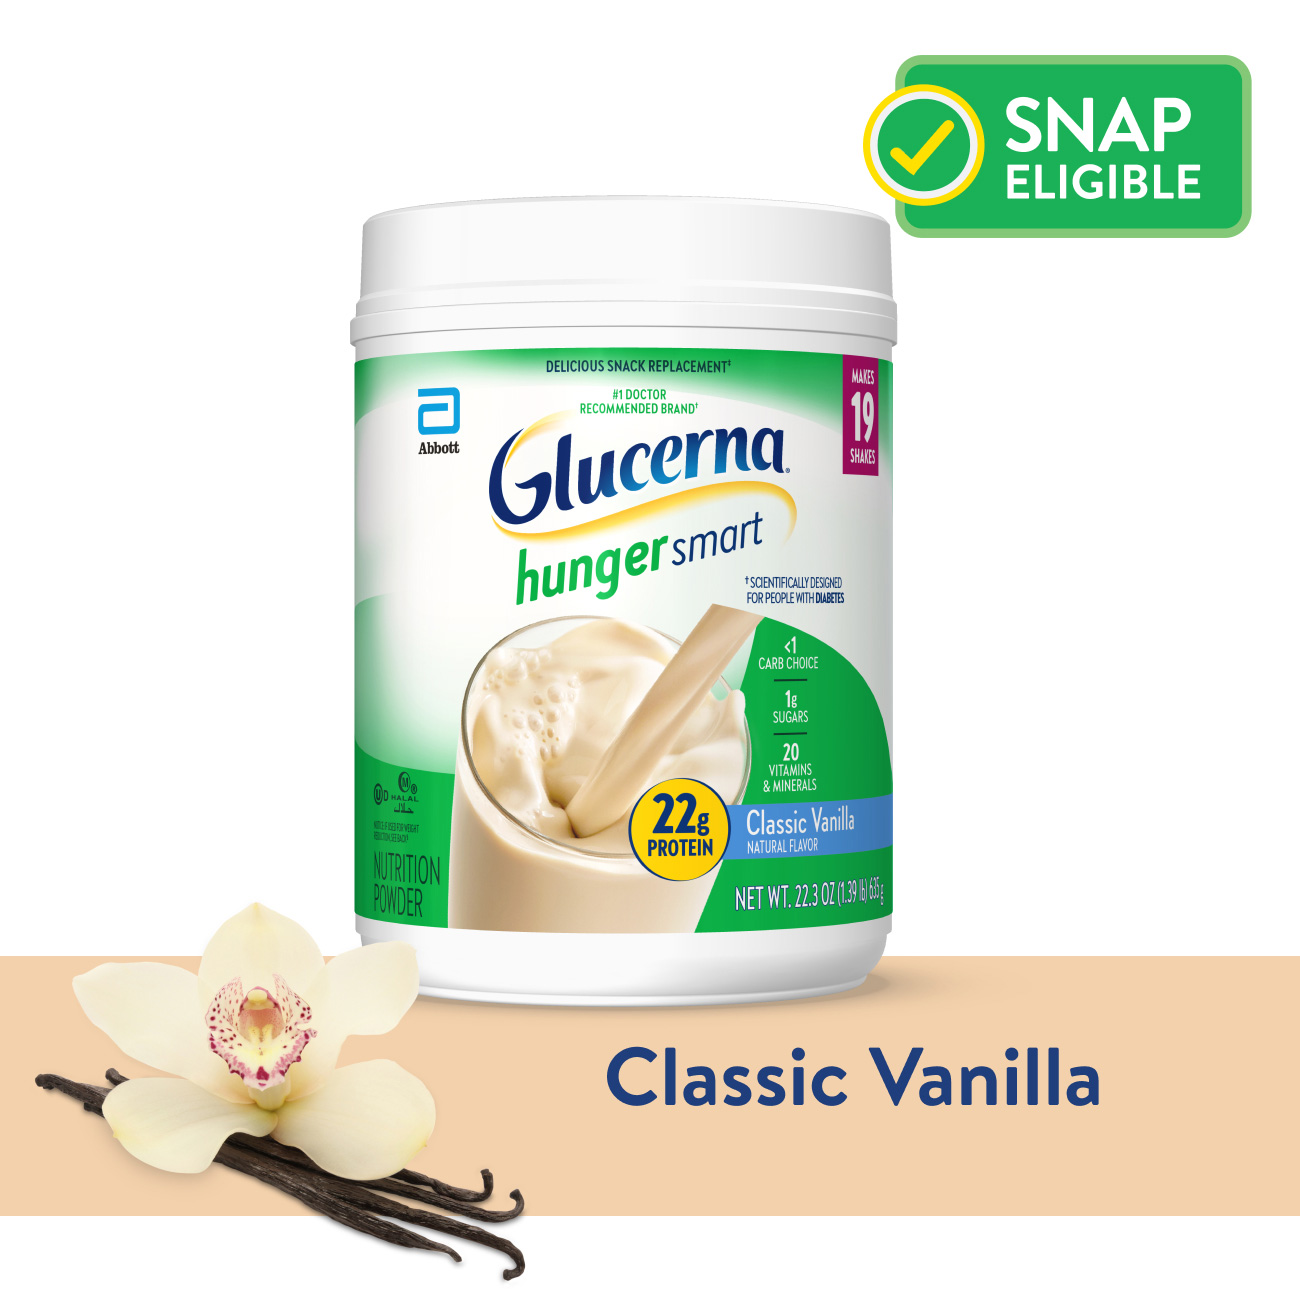 Sữa cho người tiểu đường Glucerna hunger smart Glassic Vanilla 635g giảm nồng độ đường, tăng cường vitamin và khoáng chất của Mỹ